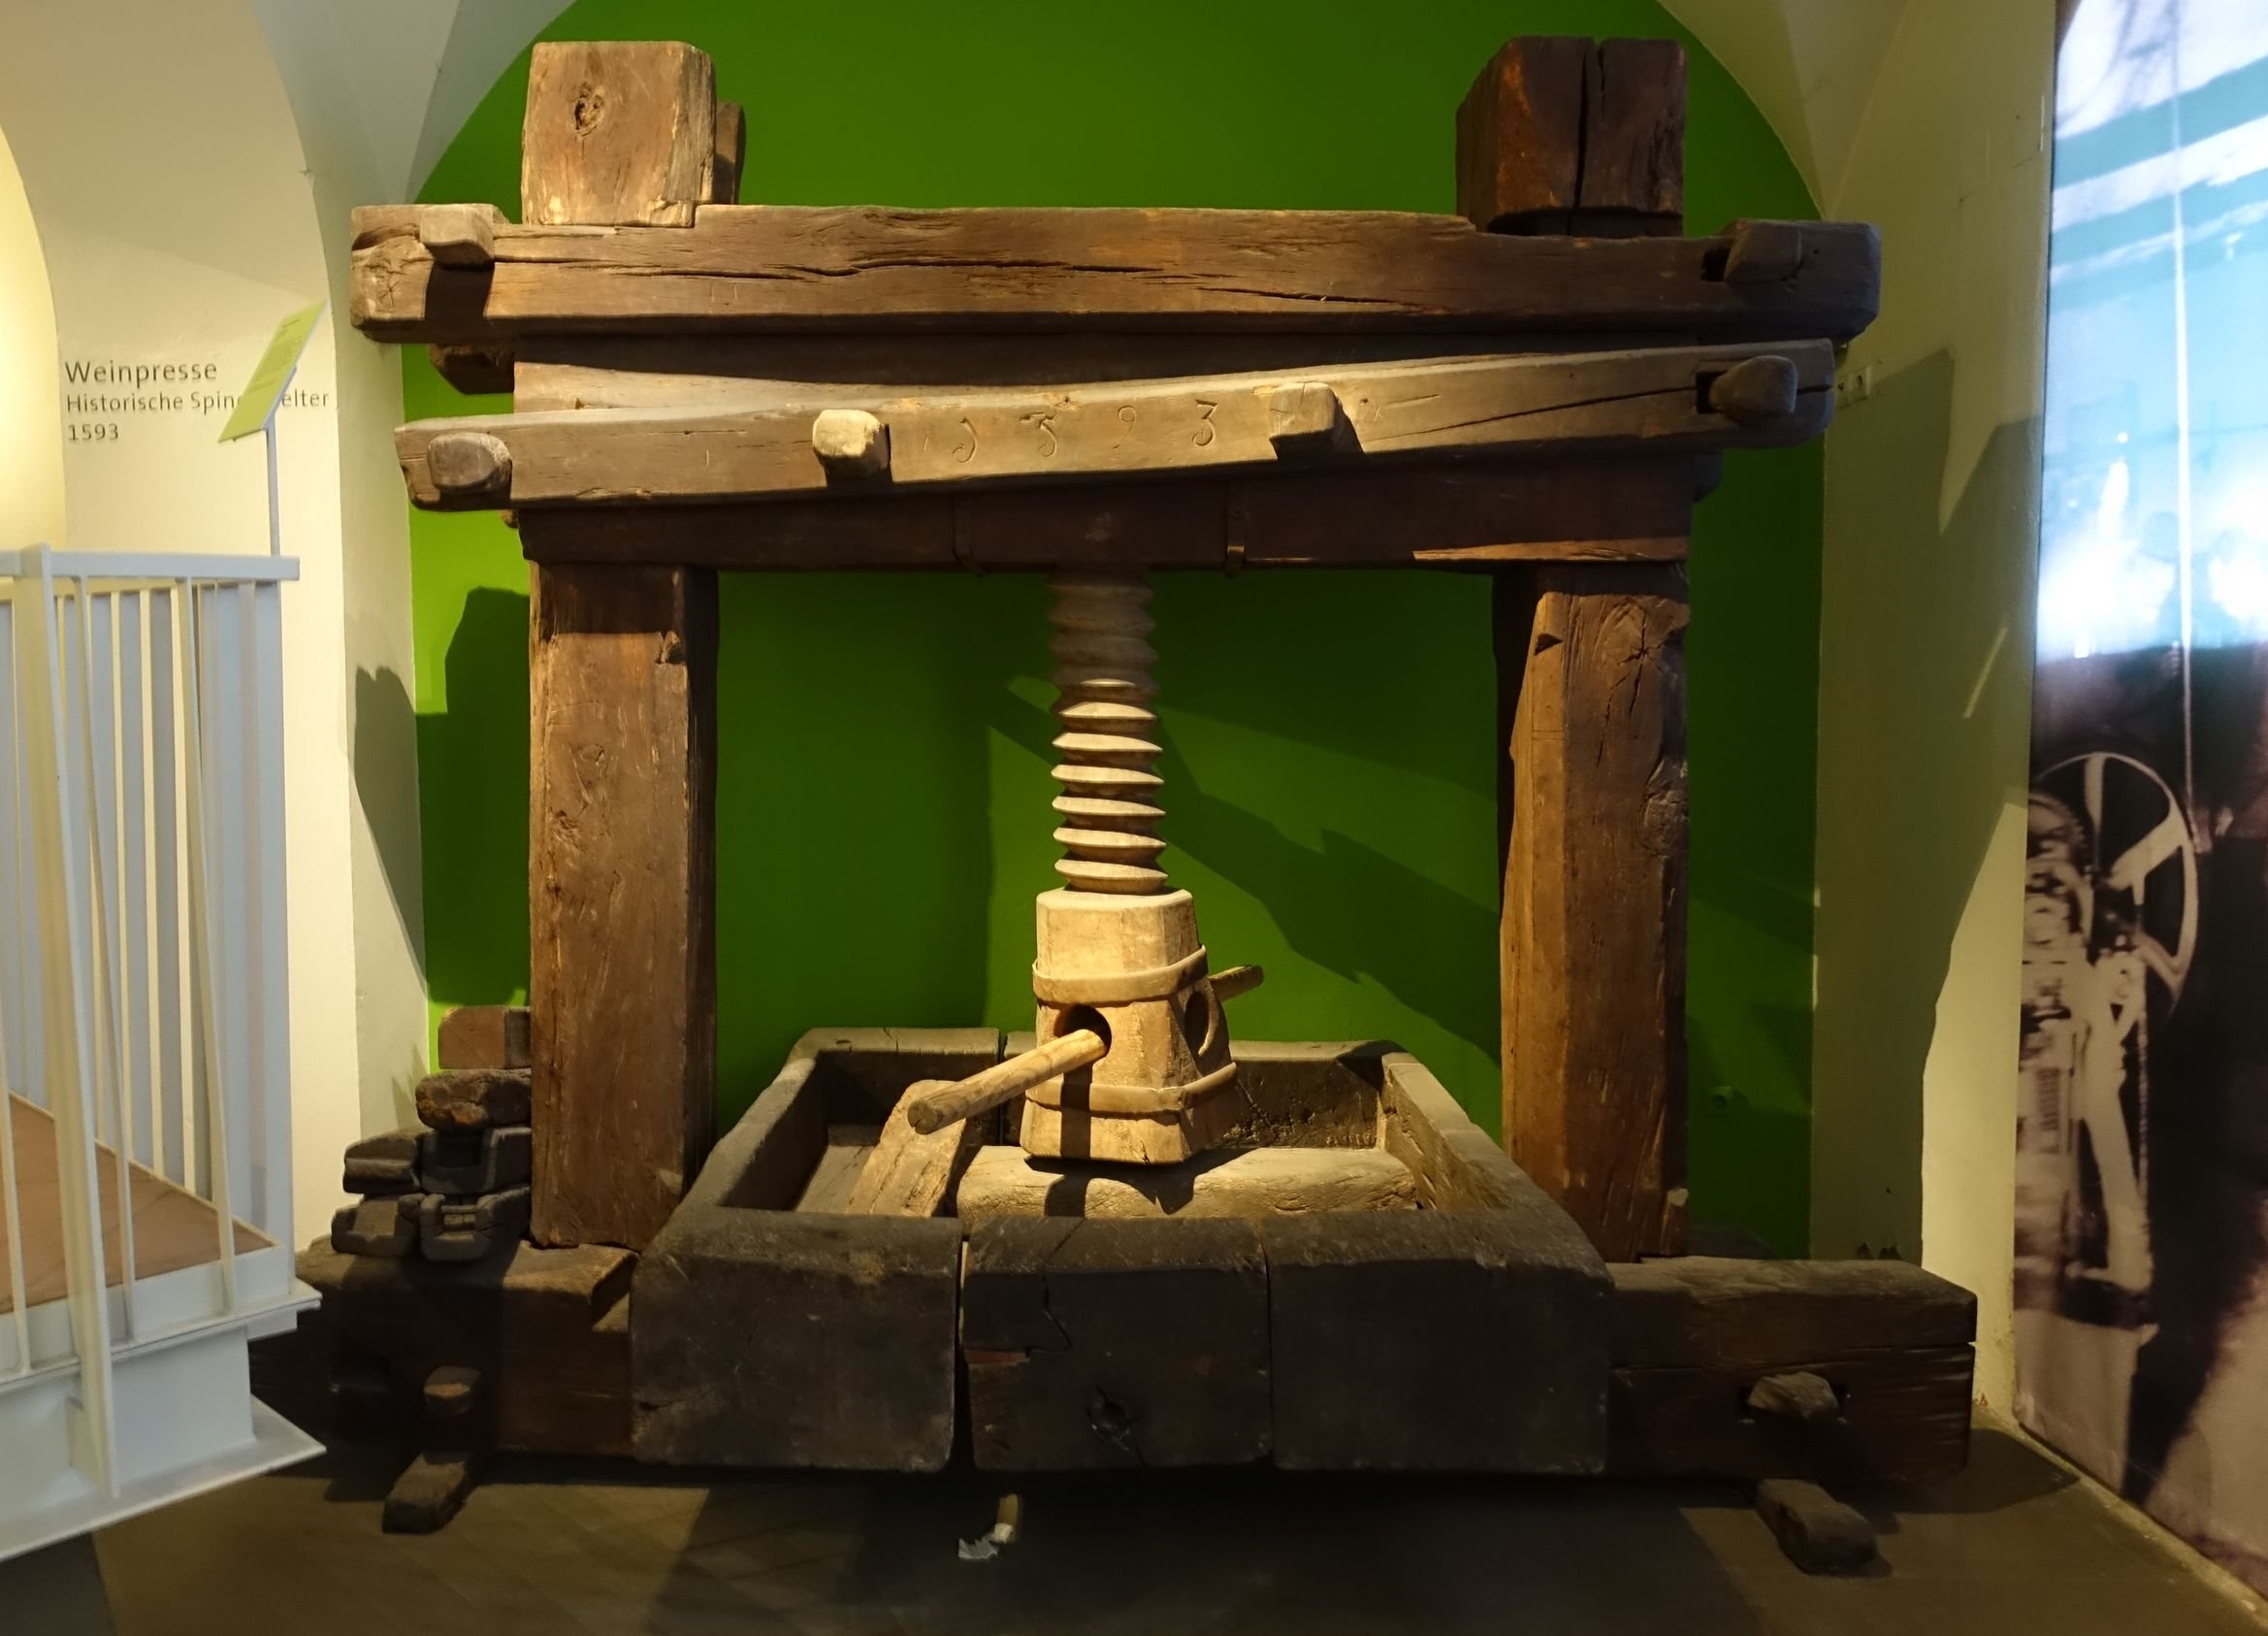 Holzspindelkelter (Historisches Museum der Pfalz, Speyer CC BY)